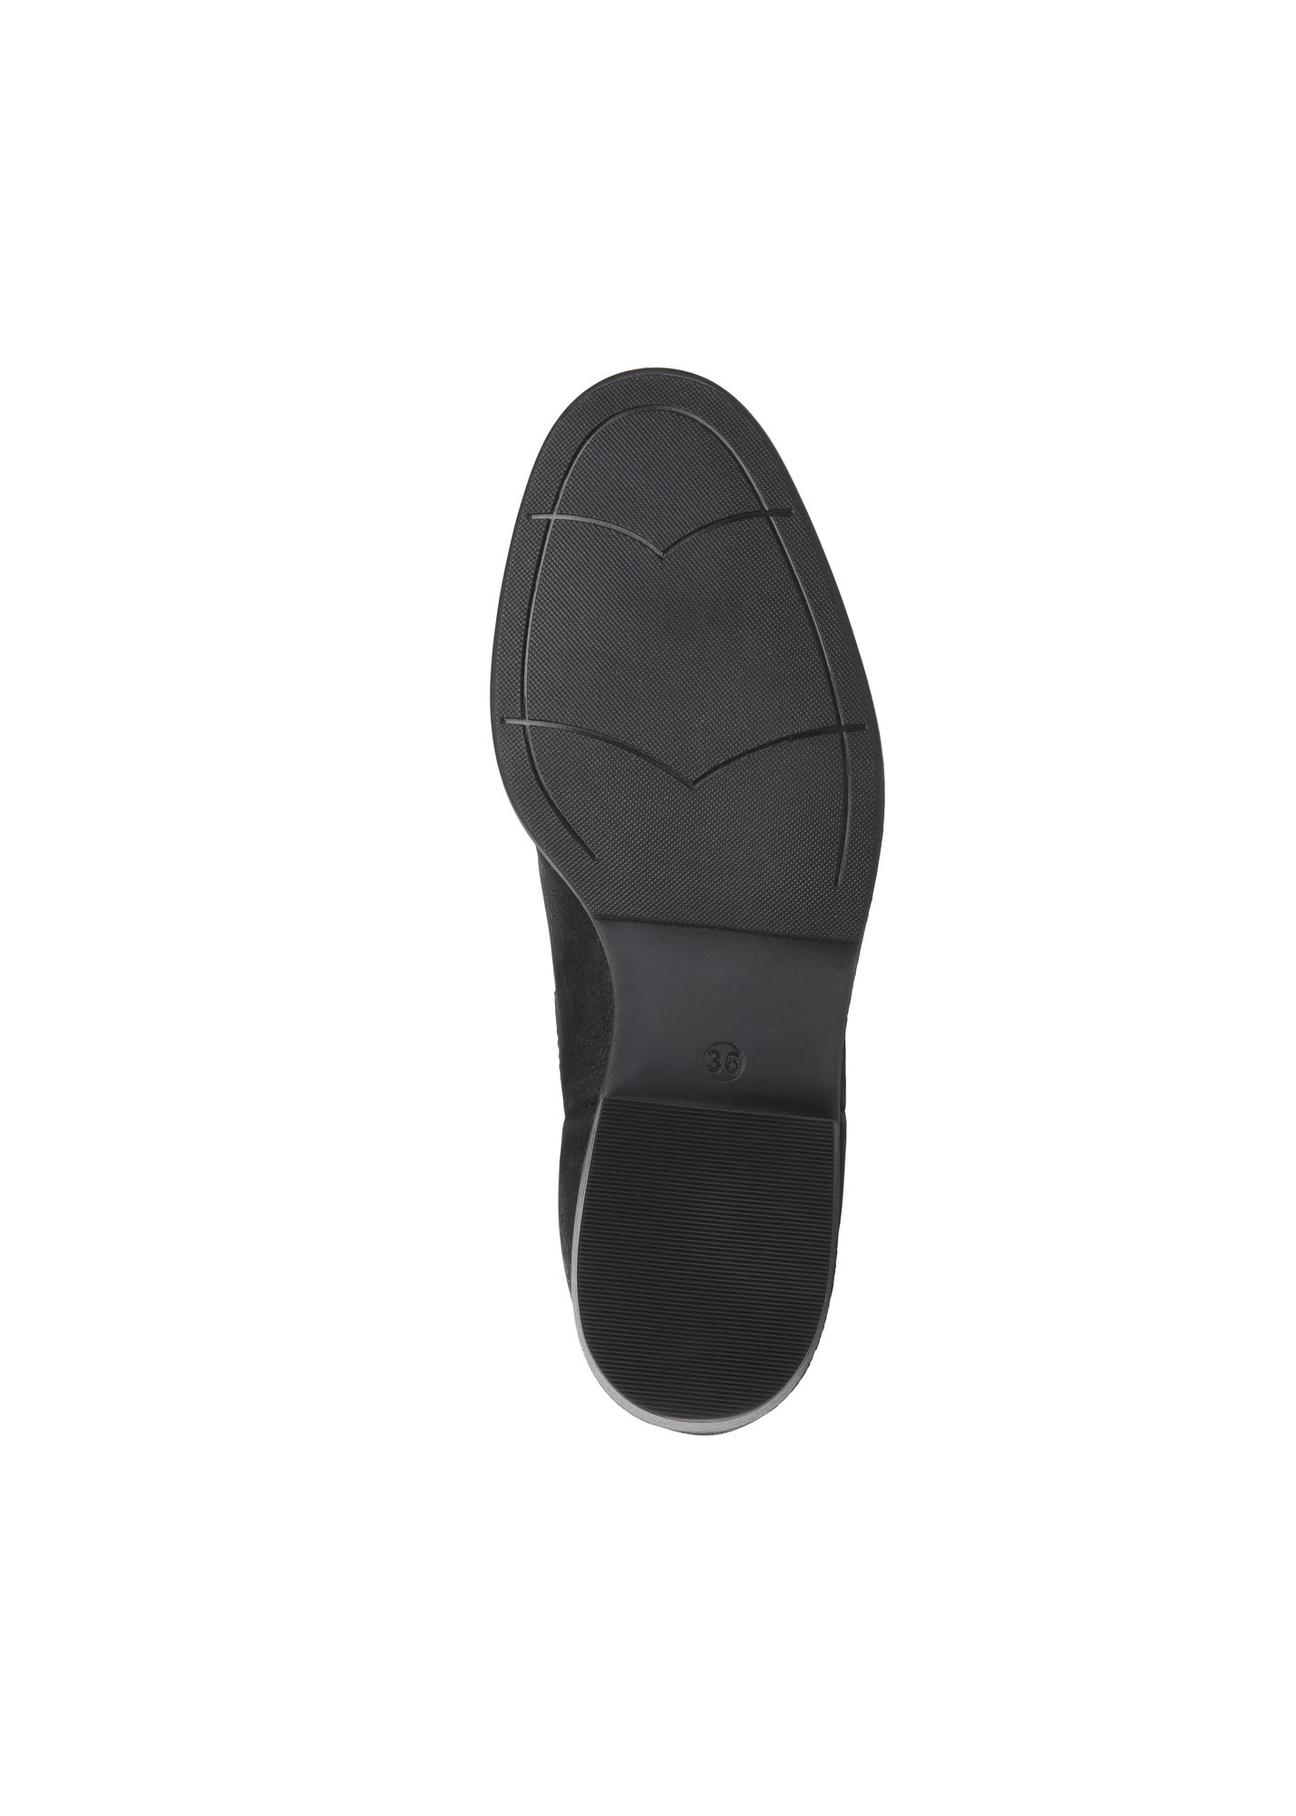 Czarne skórzane buty damskie BUTYD-0936A-98(Z23)